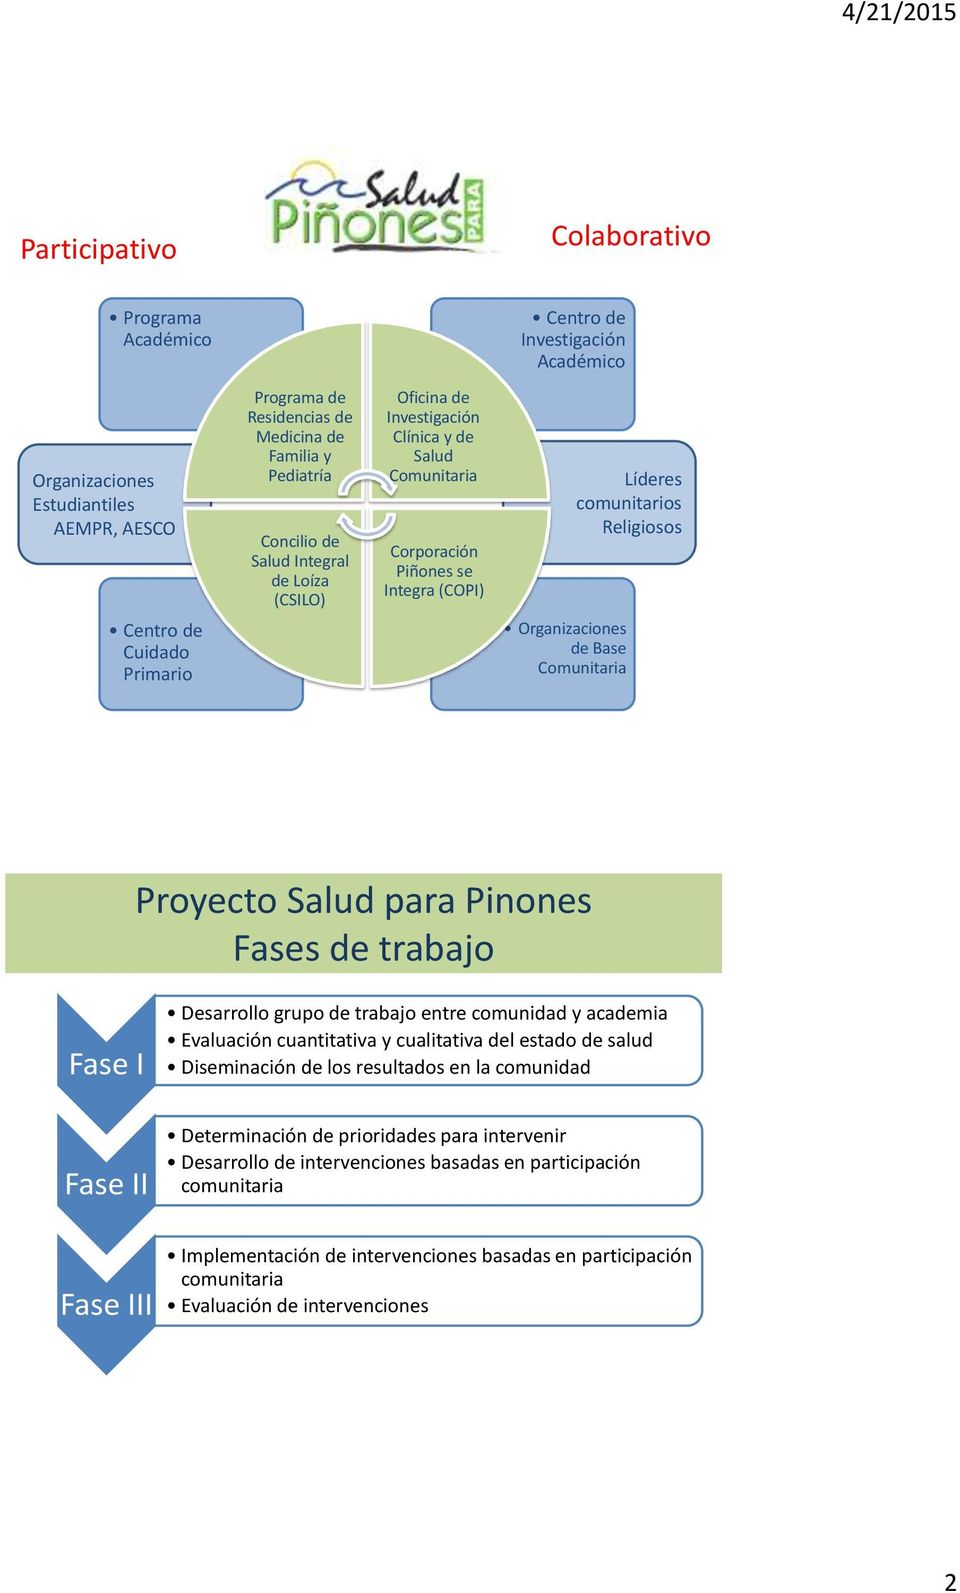 Base Comunitaria Proyecto Salud para Pinones Fases de trabajo Fase I Fase II Fase III Desarrollo grupo de trabajo entre comunidad y academia Evaluación cuantitativa y cualitativa del estado de salud